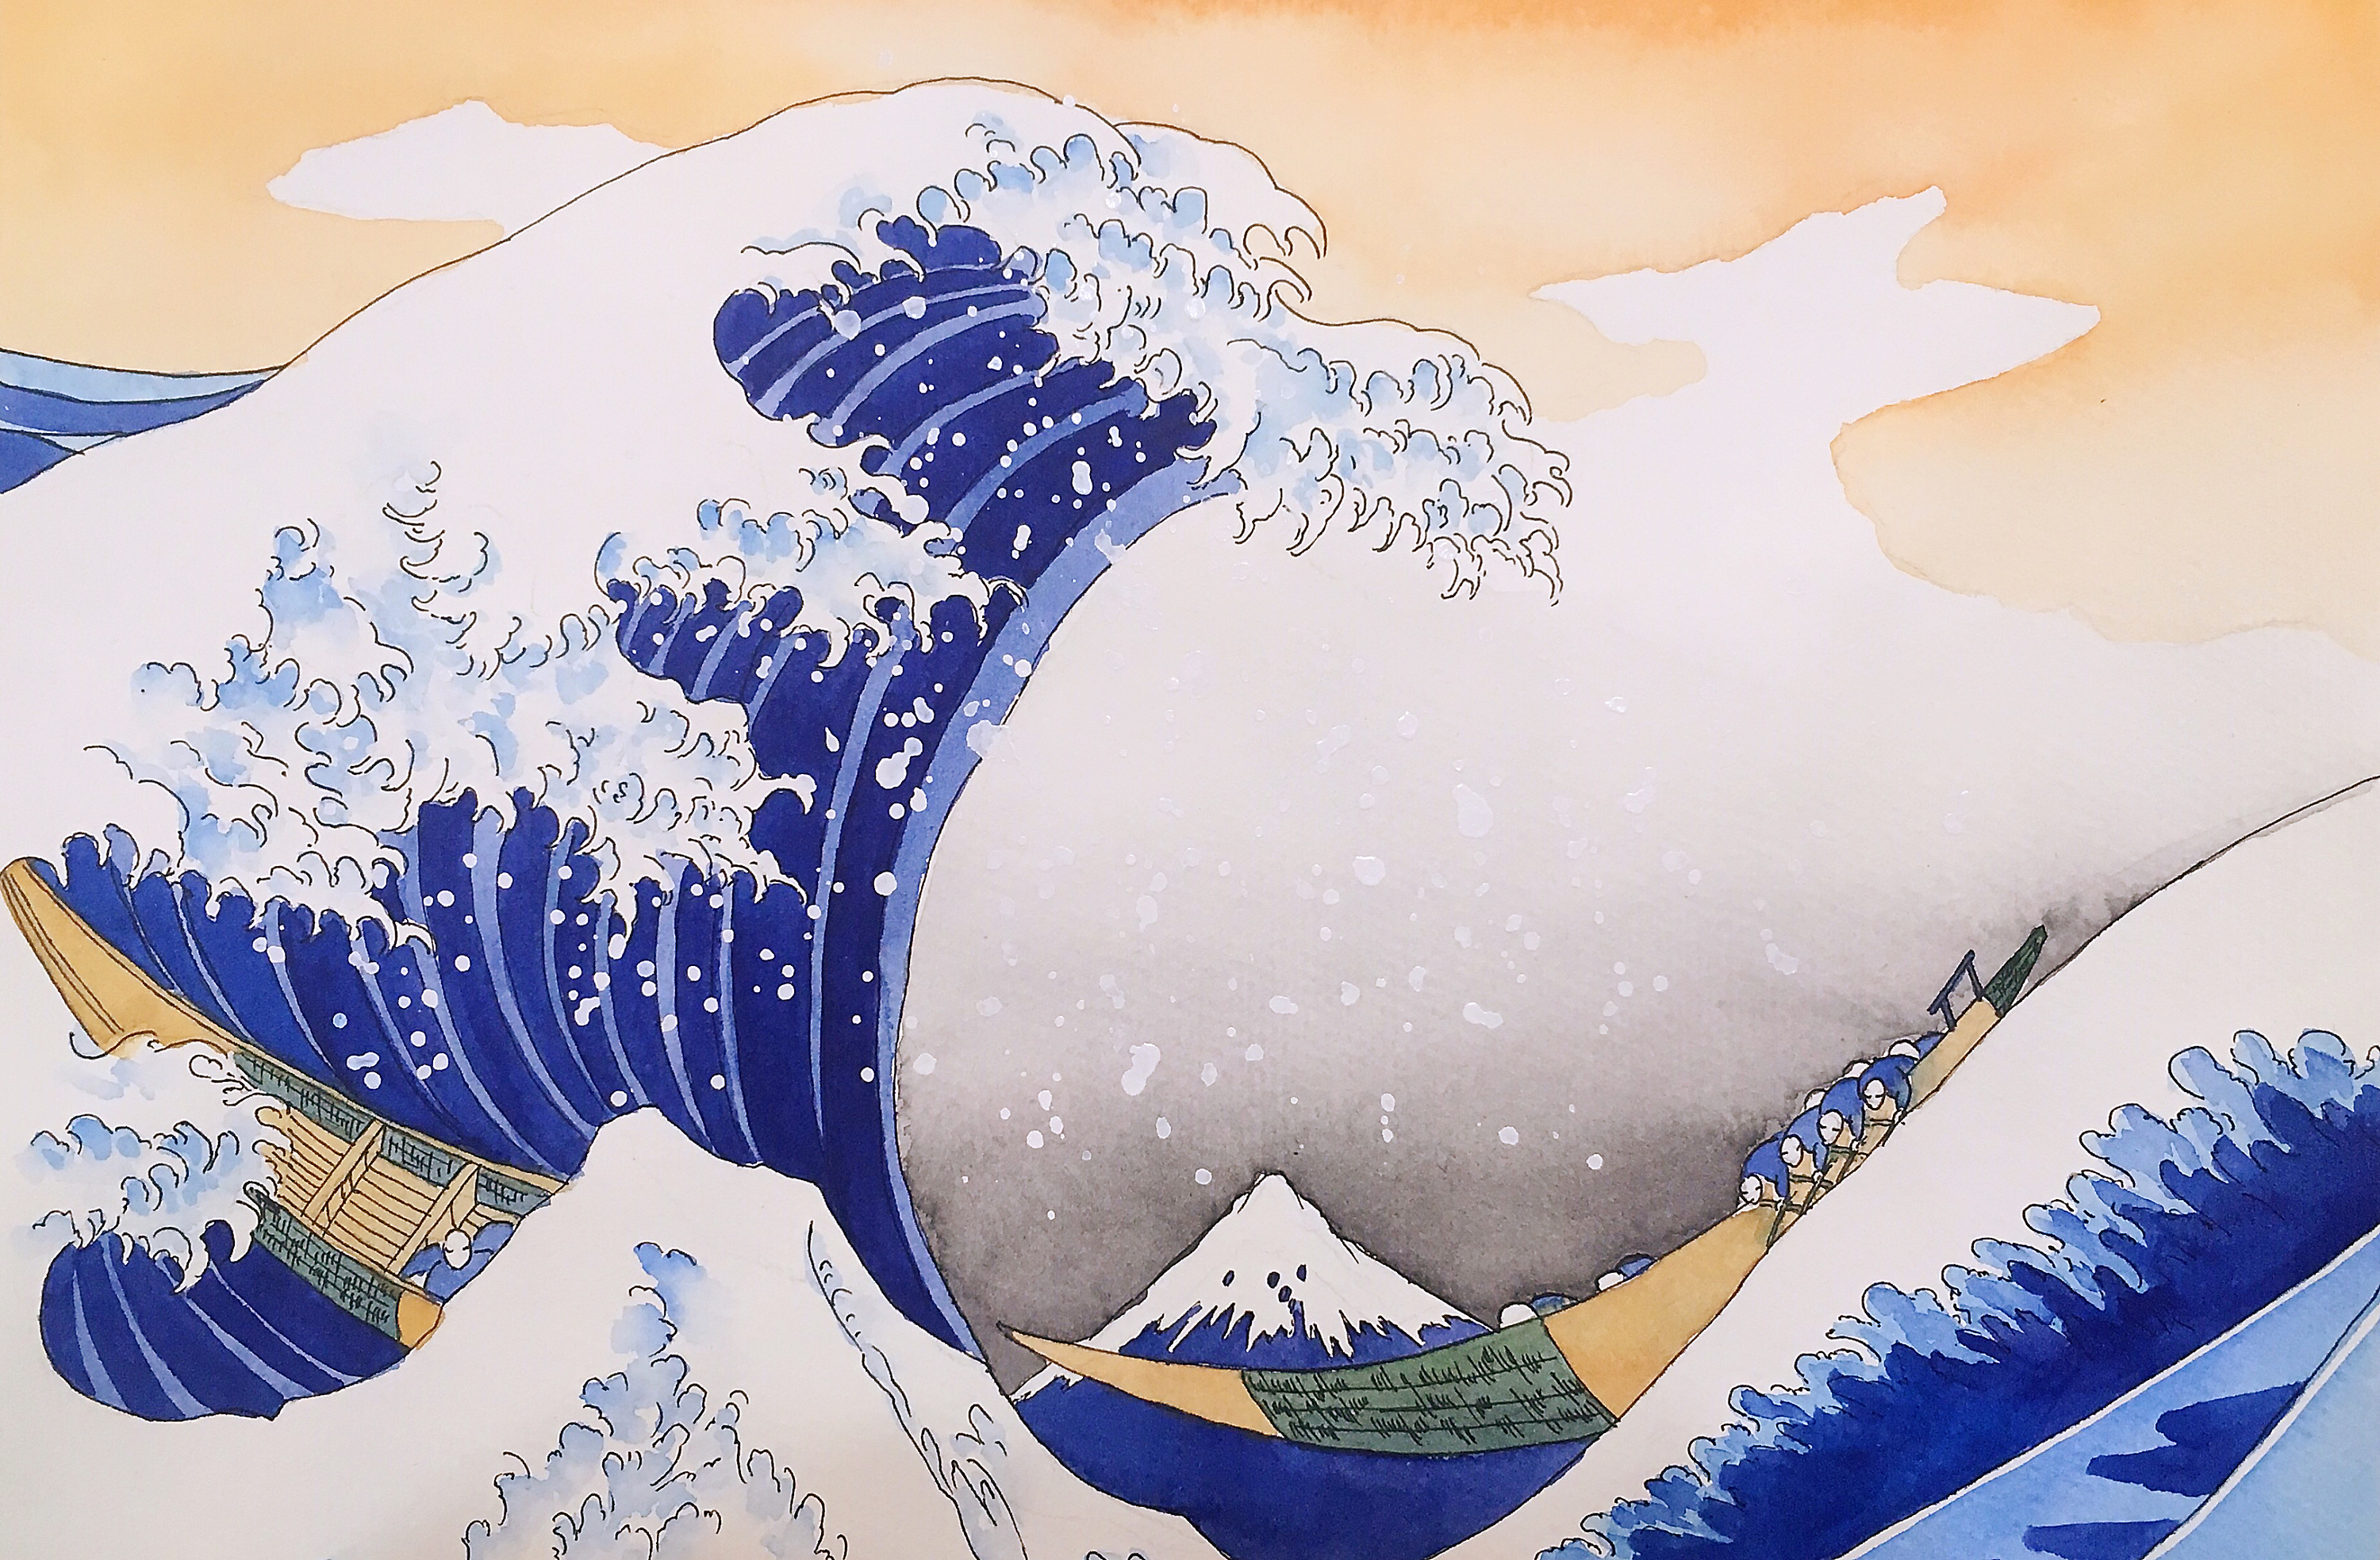 神奈川冲浪里高清壁纸图片